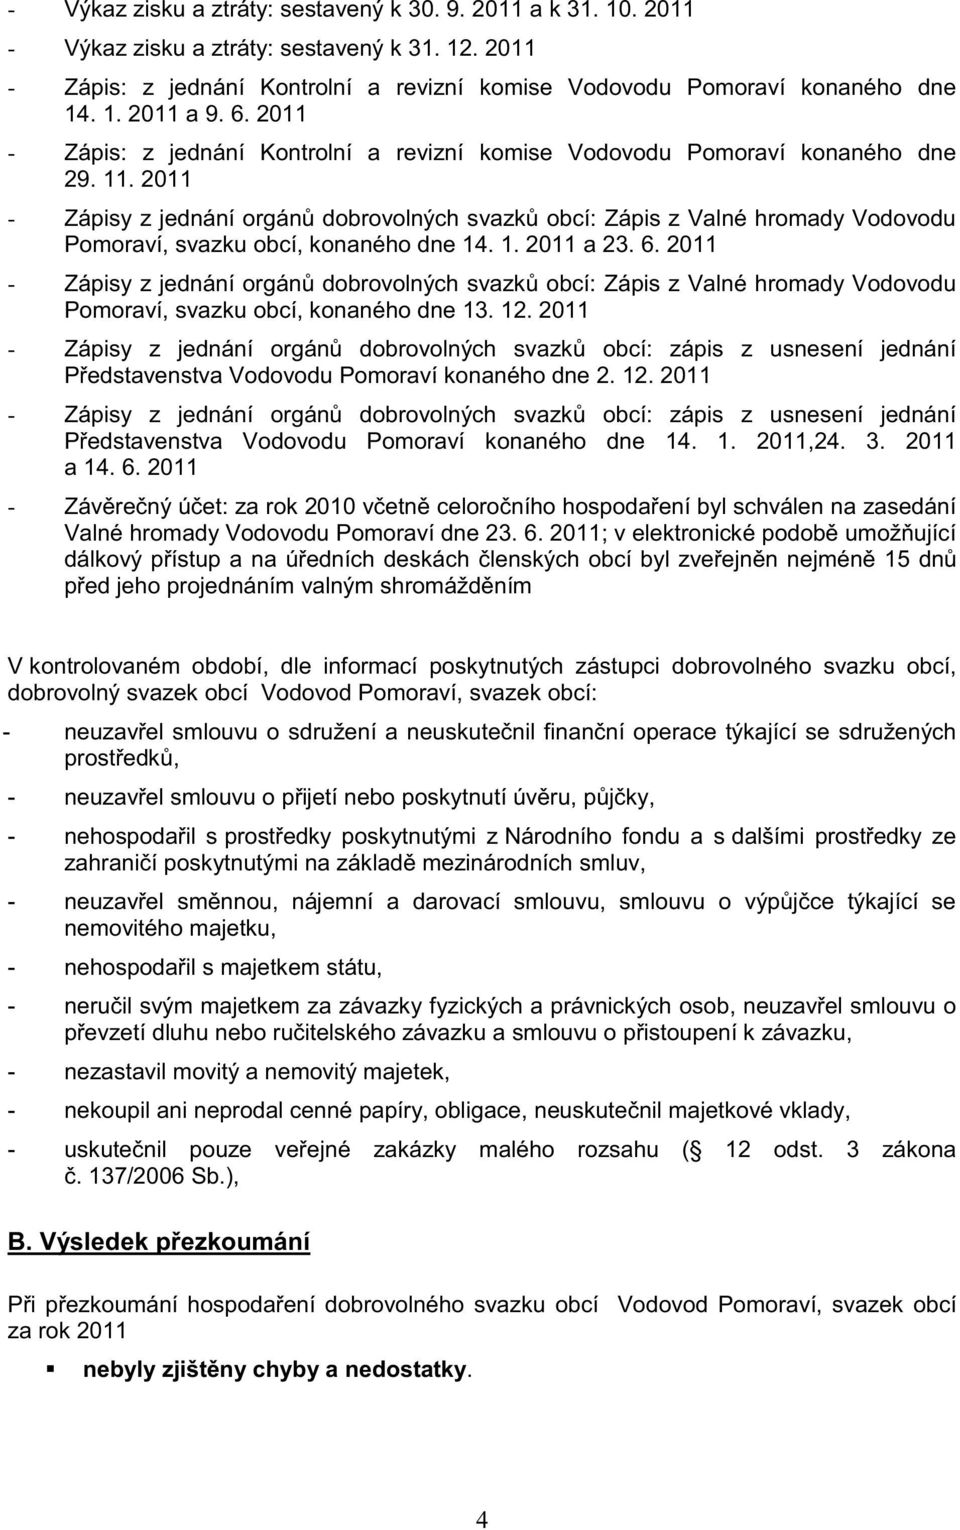 2011 - Zápisy z jednání orgánů dobrovolných svazků obcí: Zápis z Valné hromady Vodovodu Pomoraví, svazku obcí, konaného dne 14. 1. 2011 a 23. 6.